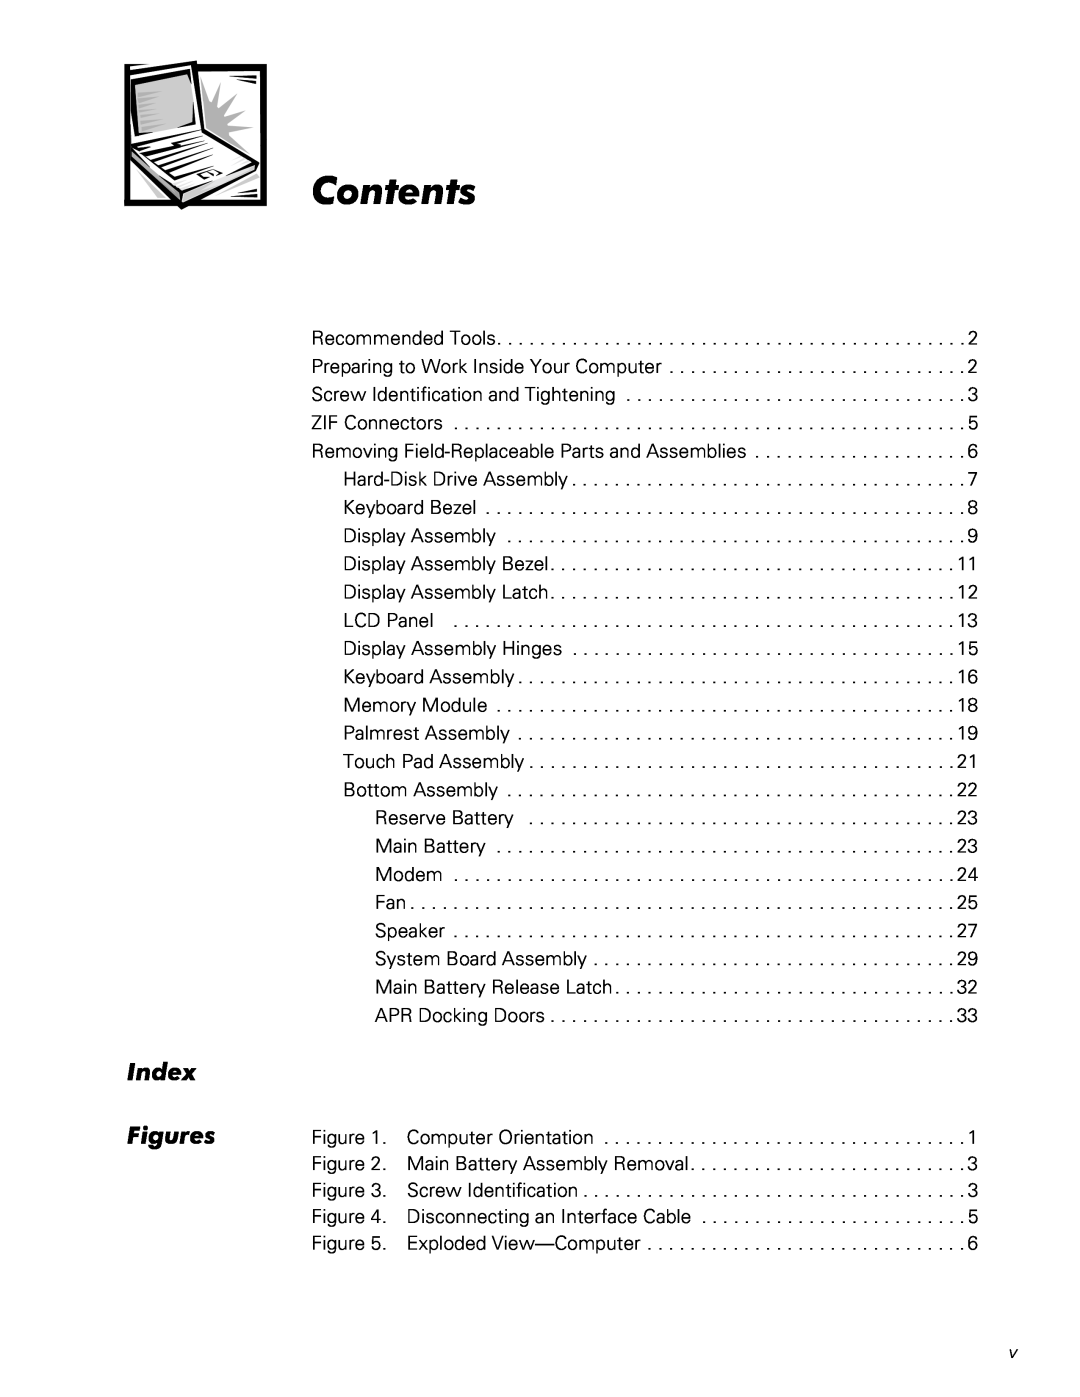 Dell L400 service manual Contents, Index Figures 